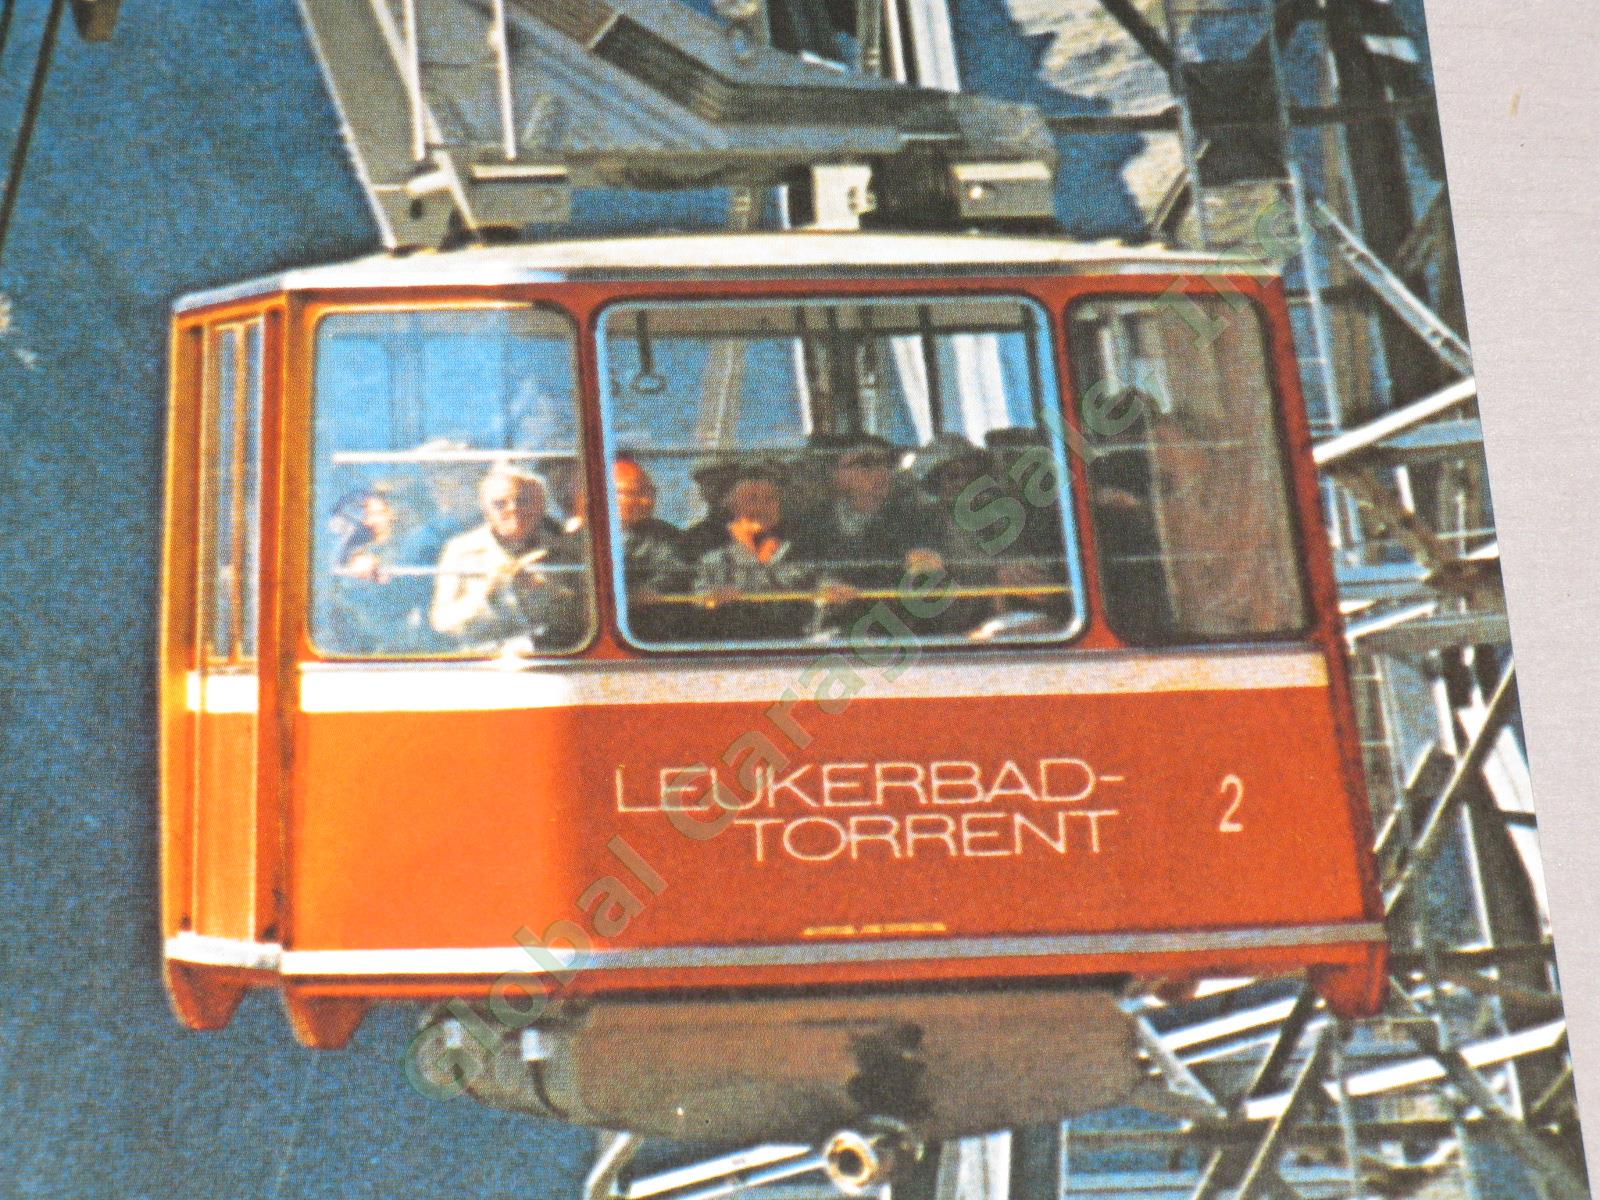 Vtg 1974 Swiss Travel Poster Leukerbad-Albinen Valais Ski Resort Hot Springs NR! 3